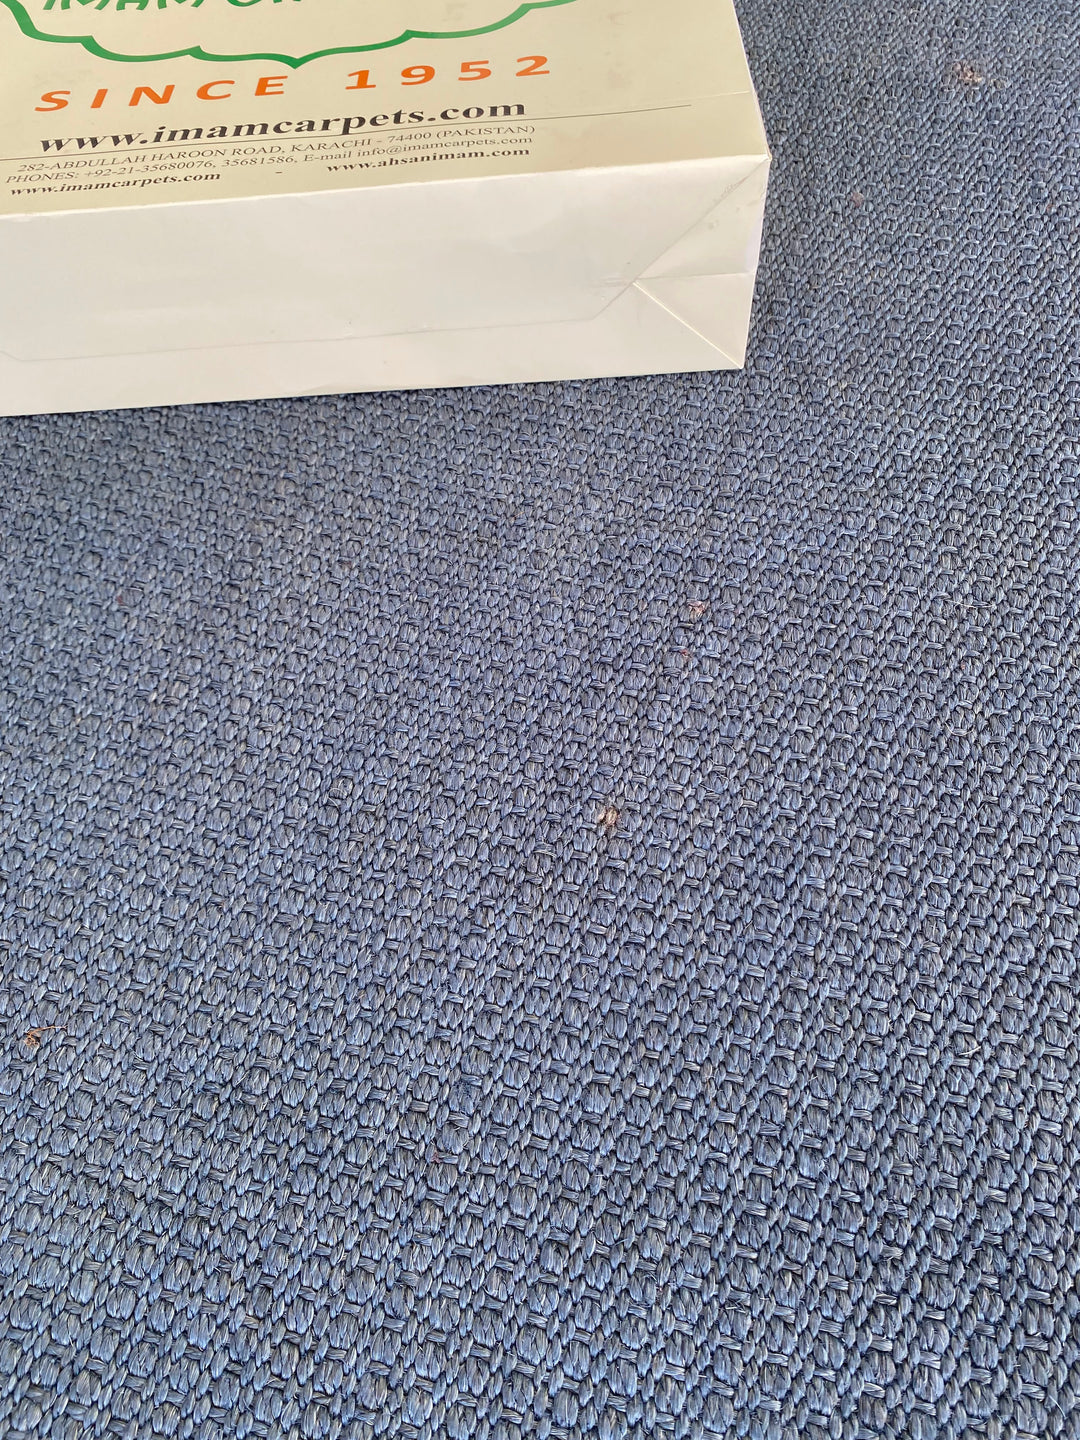 Sisal Runner - Size: 9 x 2.7 - Imam Carpet Co